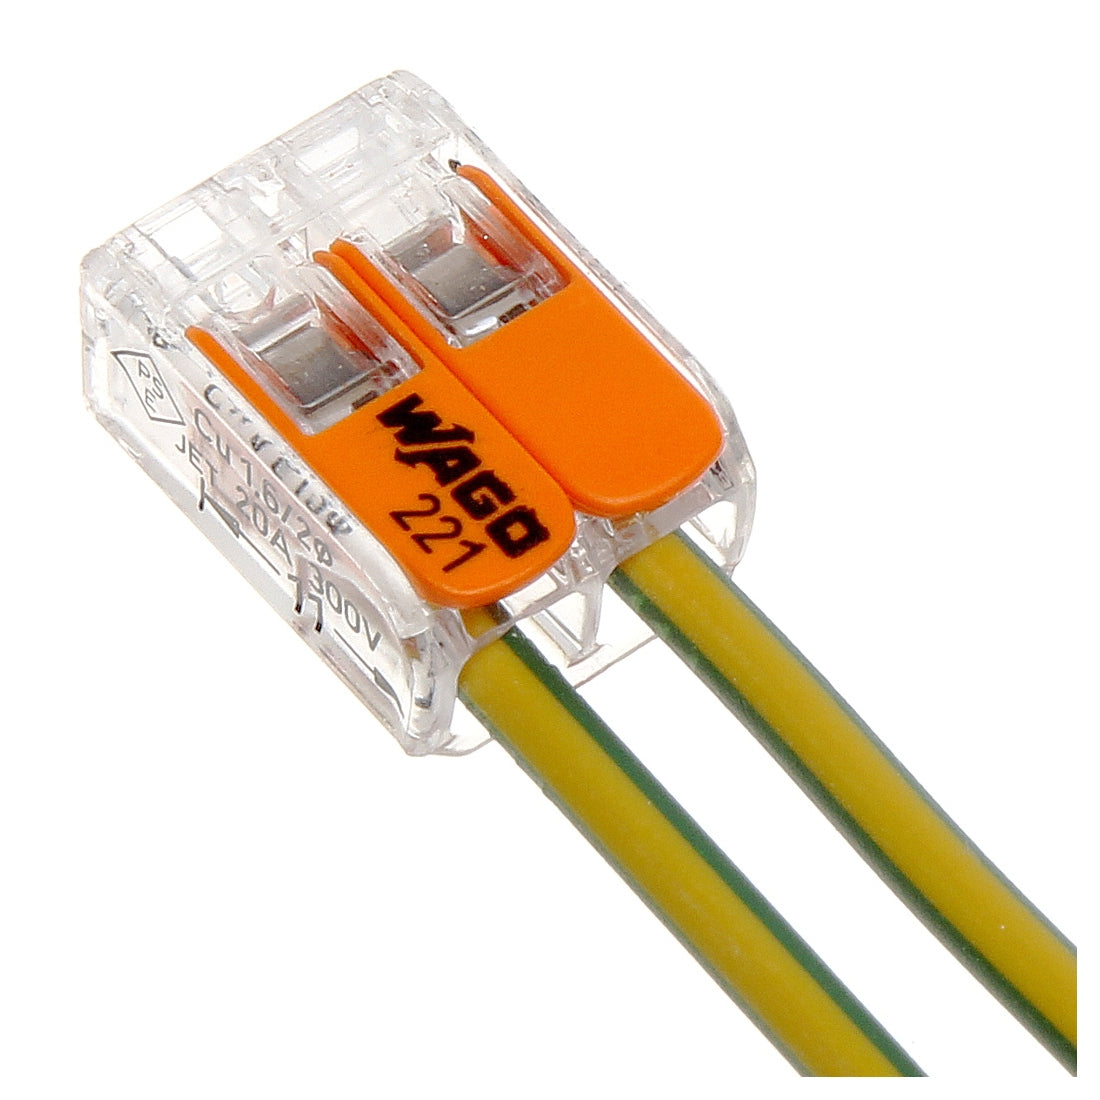 wago wire connectors